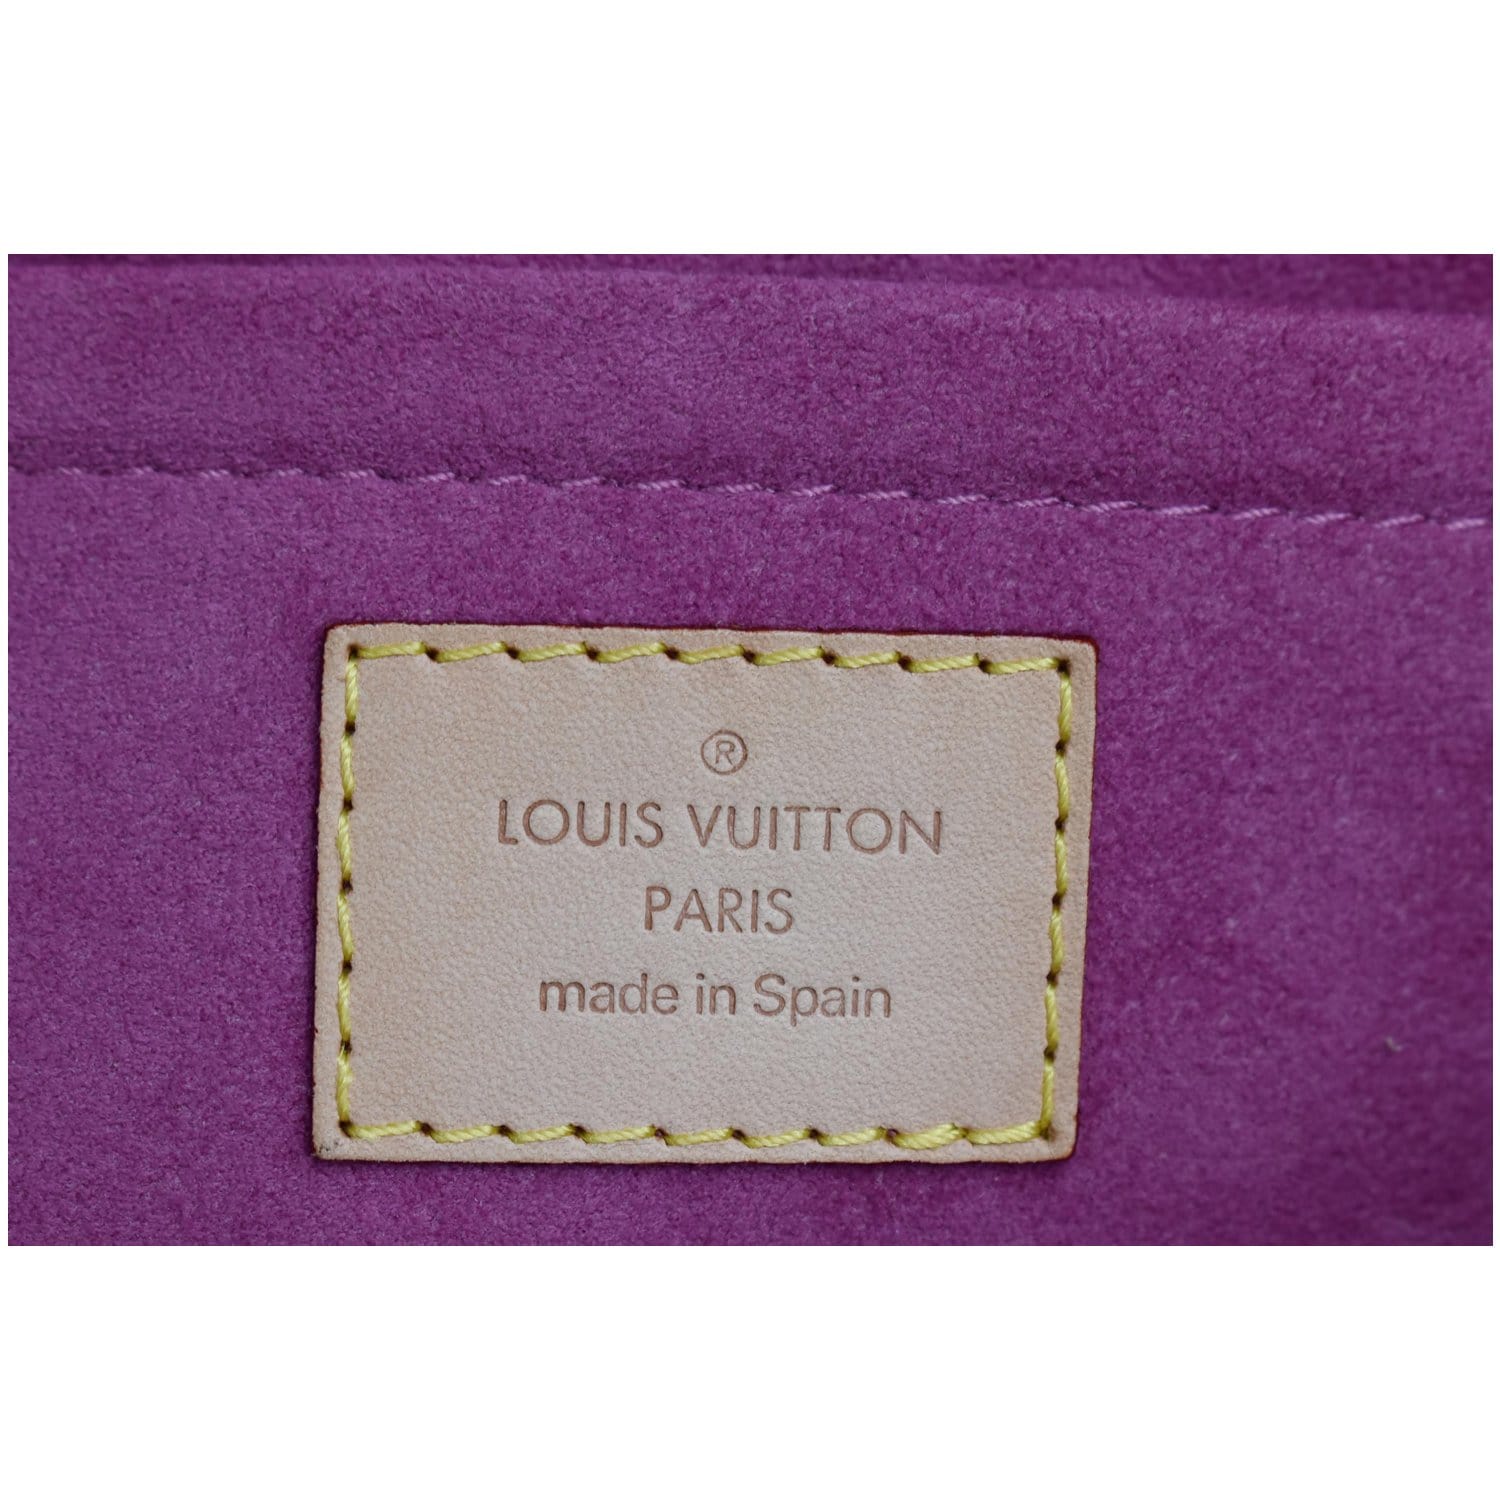 Louis Vuitton - Mini Pleaty on Designer Wardrobe